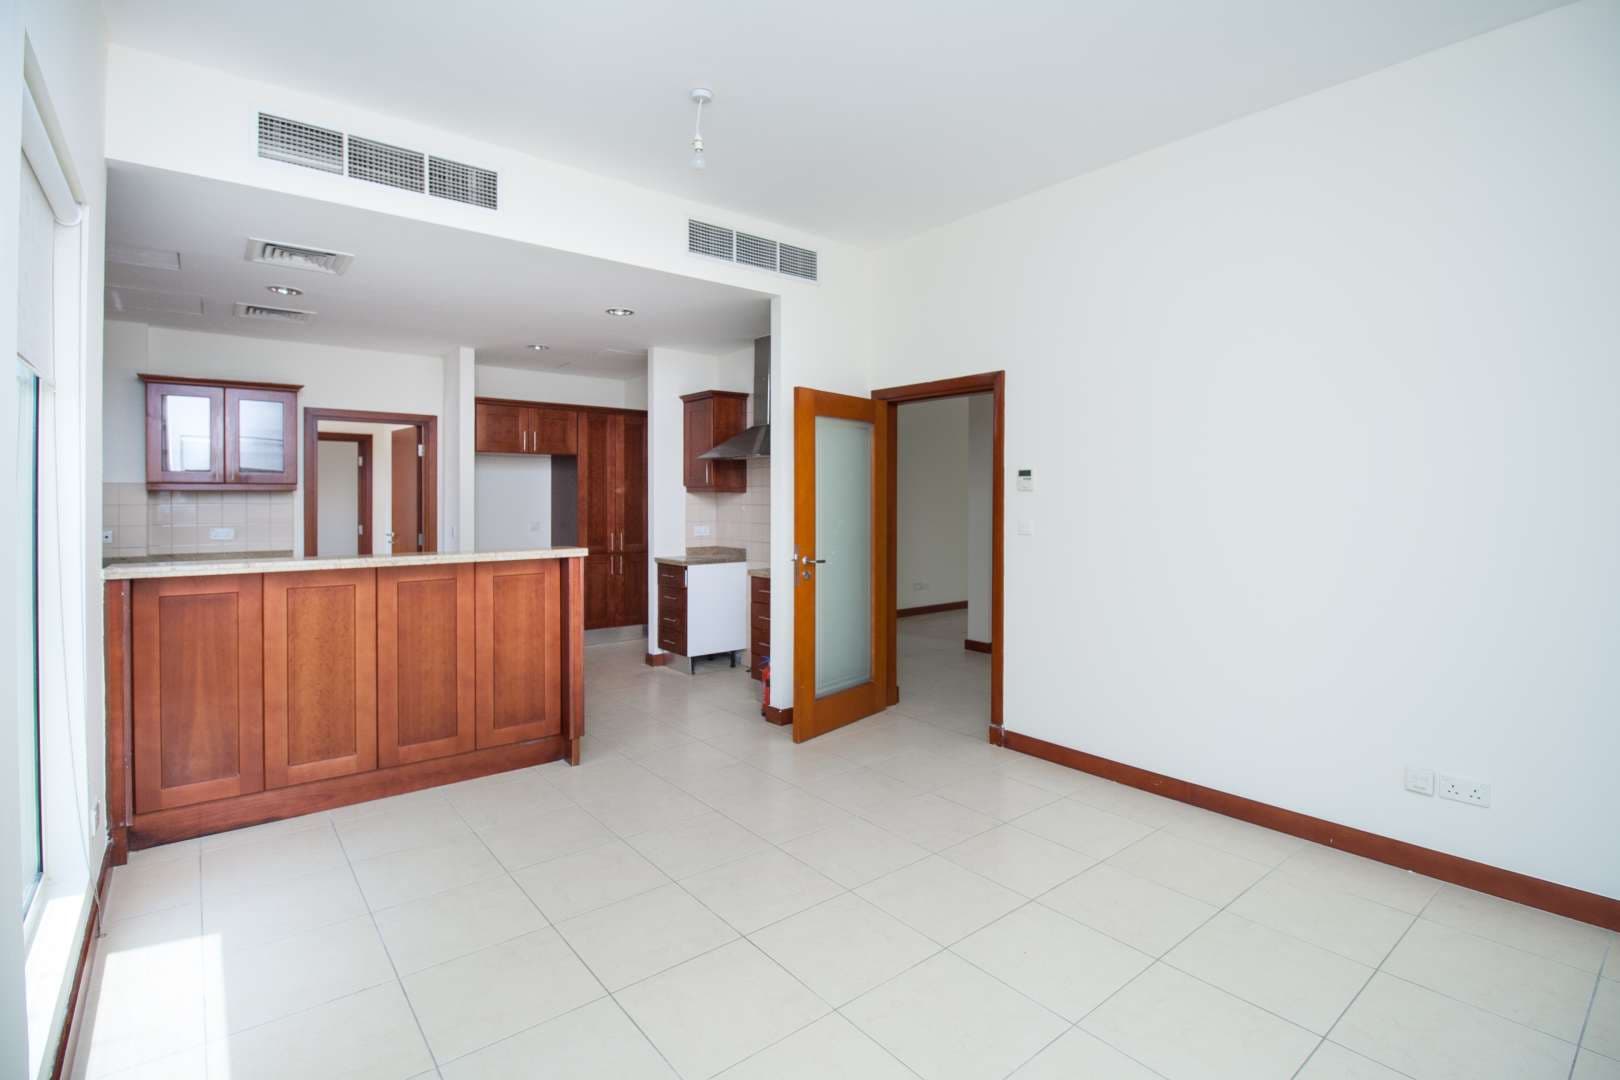 4 Bedroom Villa For Sale Saheel Lp10165 9031711a36f3f80.jpg